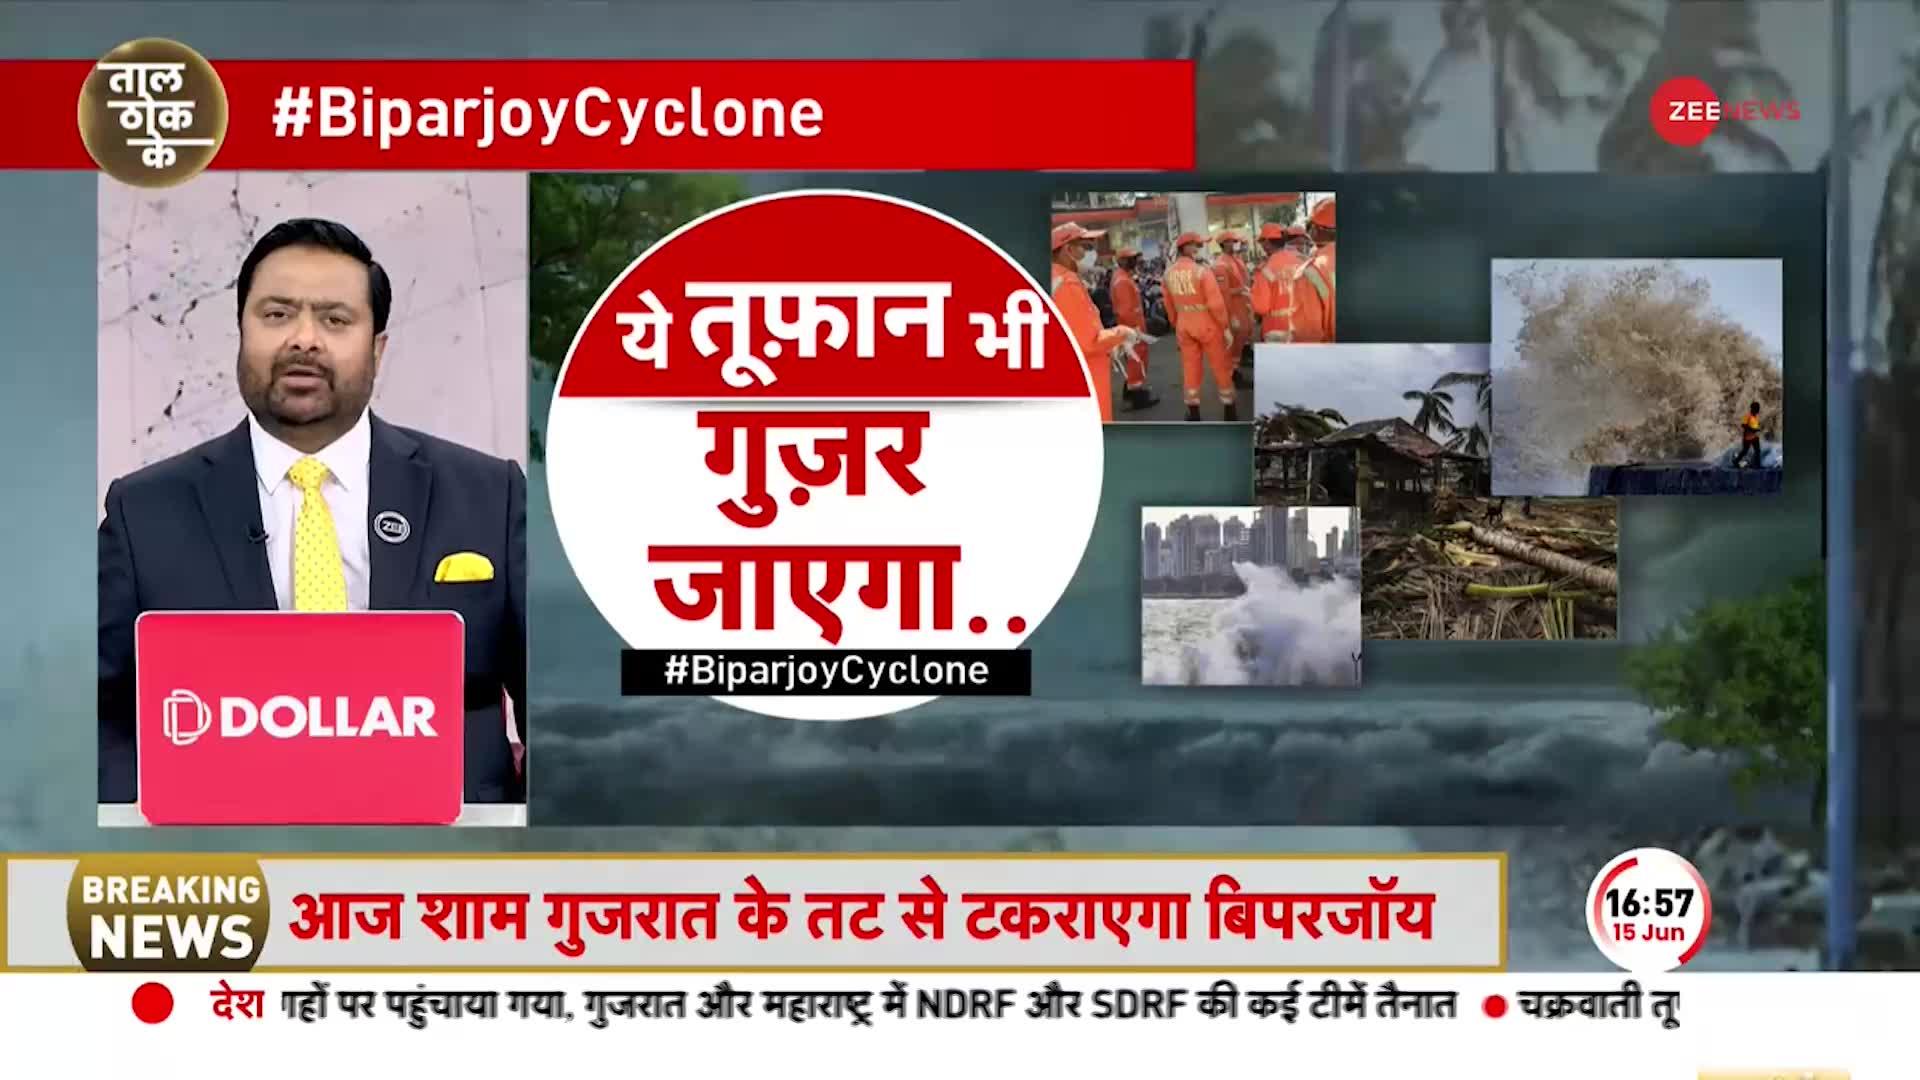 Taal Thok Ke : ये 'तूफान' है तो हम 'चट्टान' है! | Cyclone Biparjoy Destruction In Gujarat